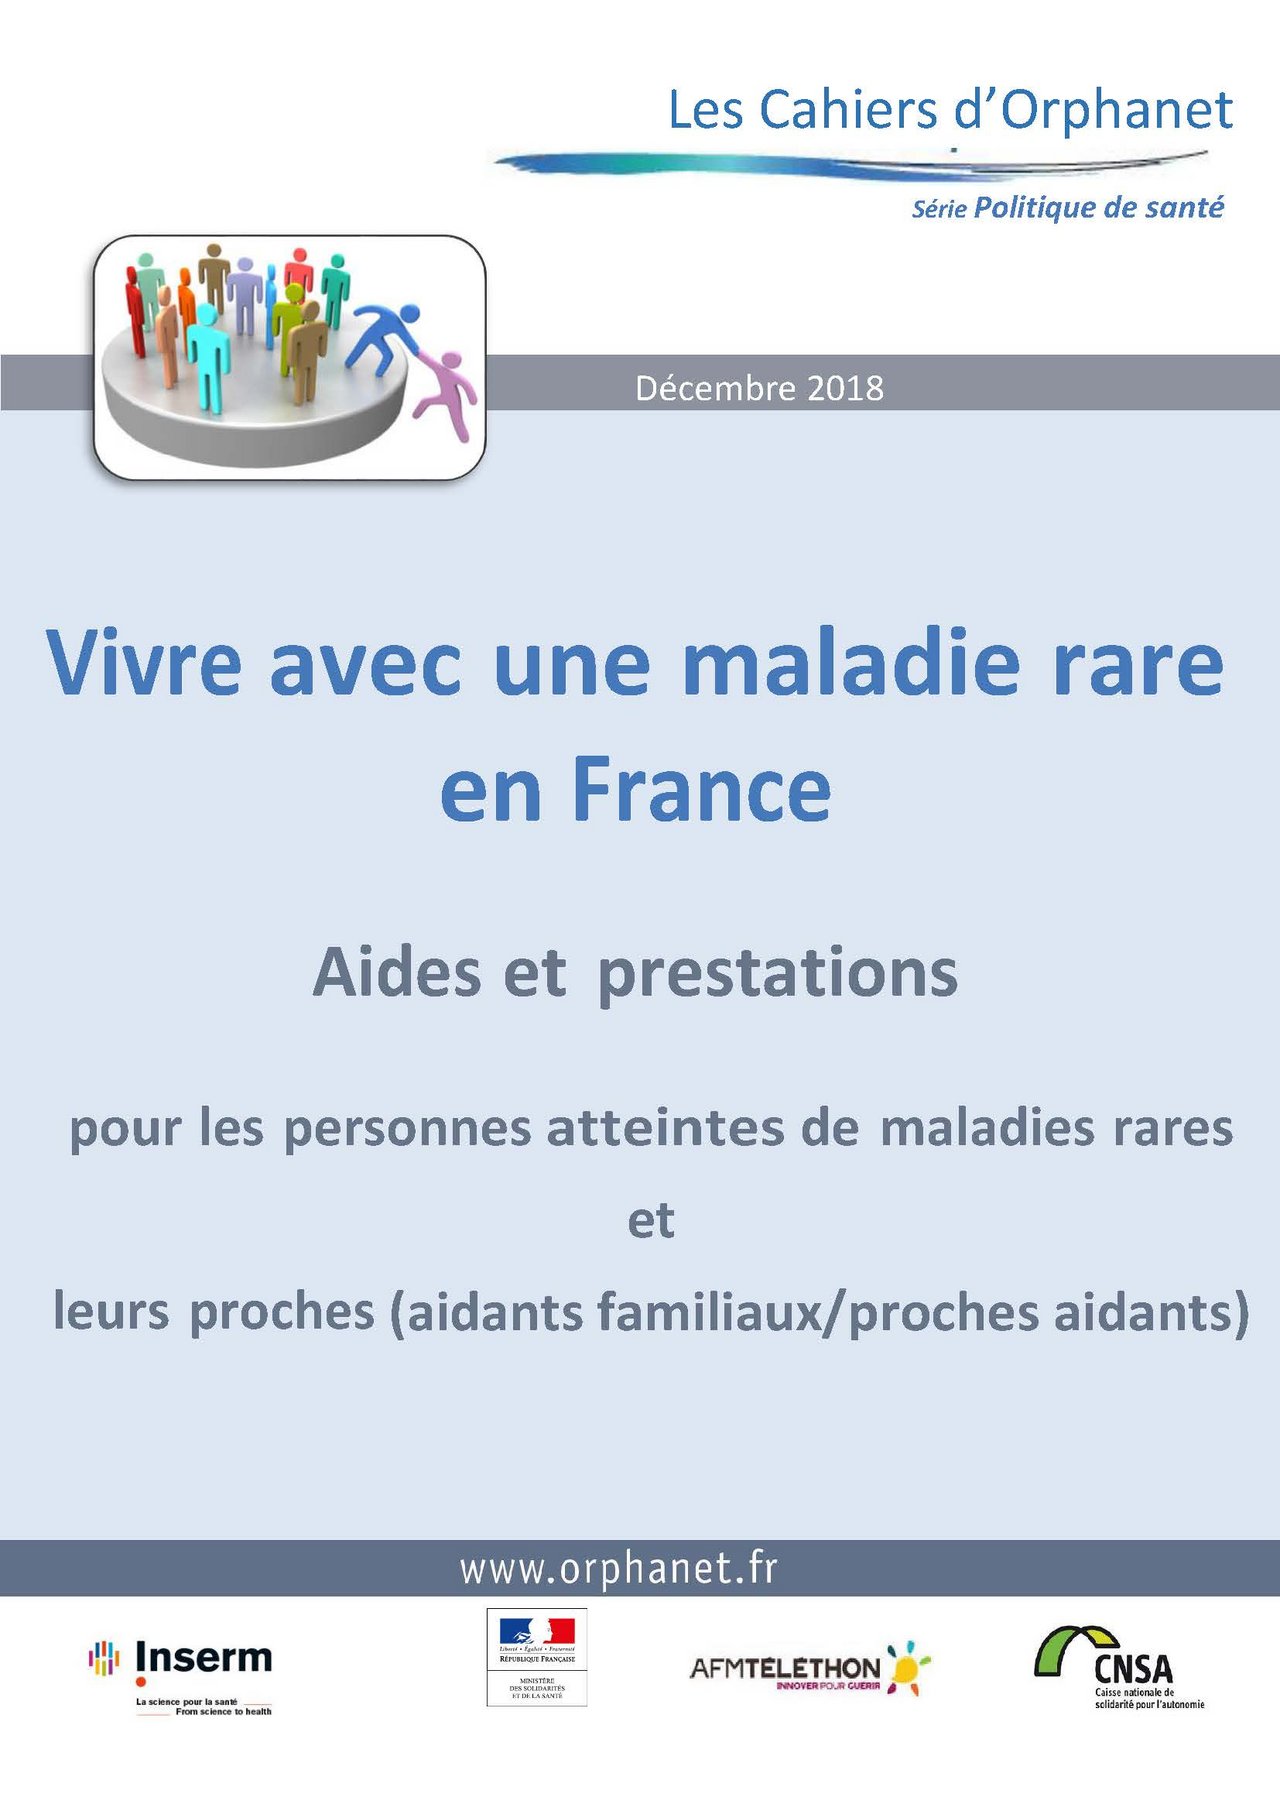 Visuel pour le Cahier Orphanet "Vivre avec une maladie rare en France"